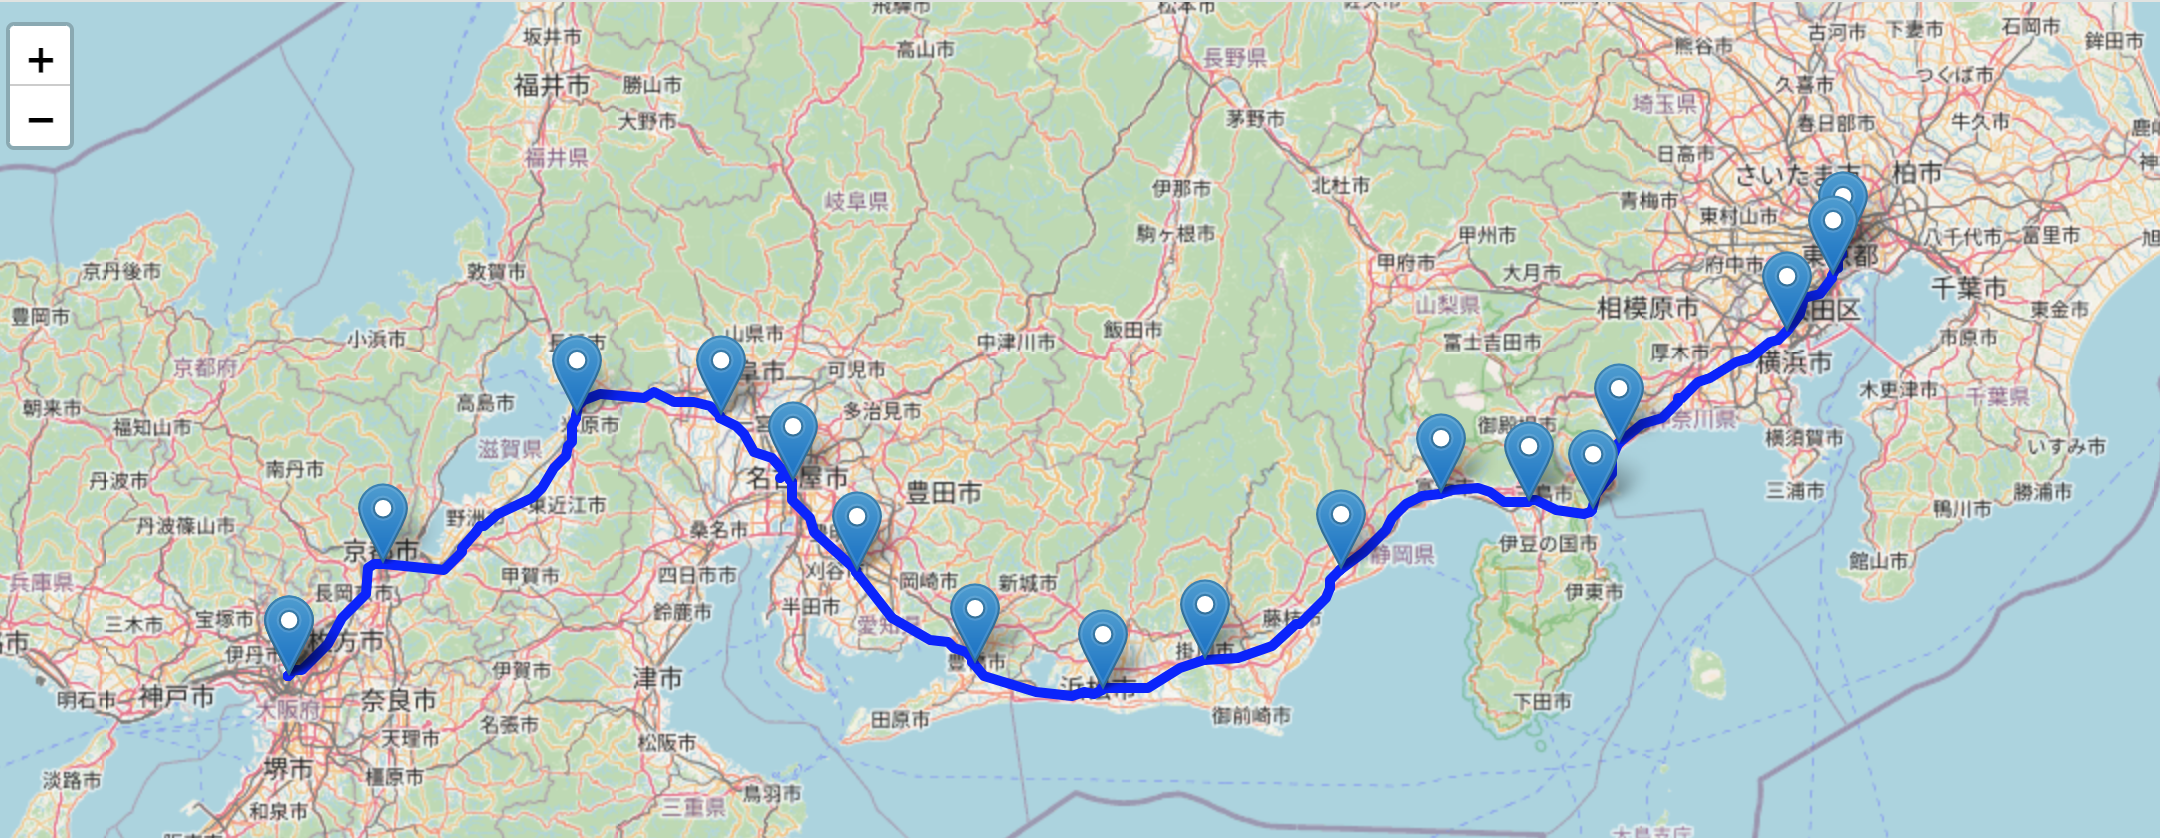 東海道新幹線_経路と駅(leafmap2).png